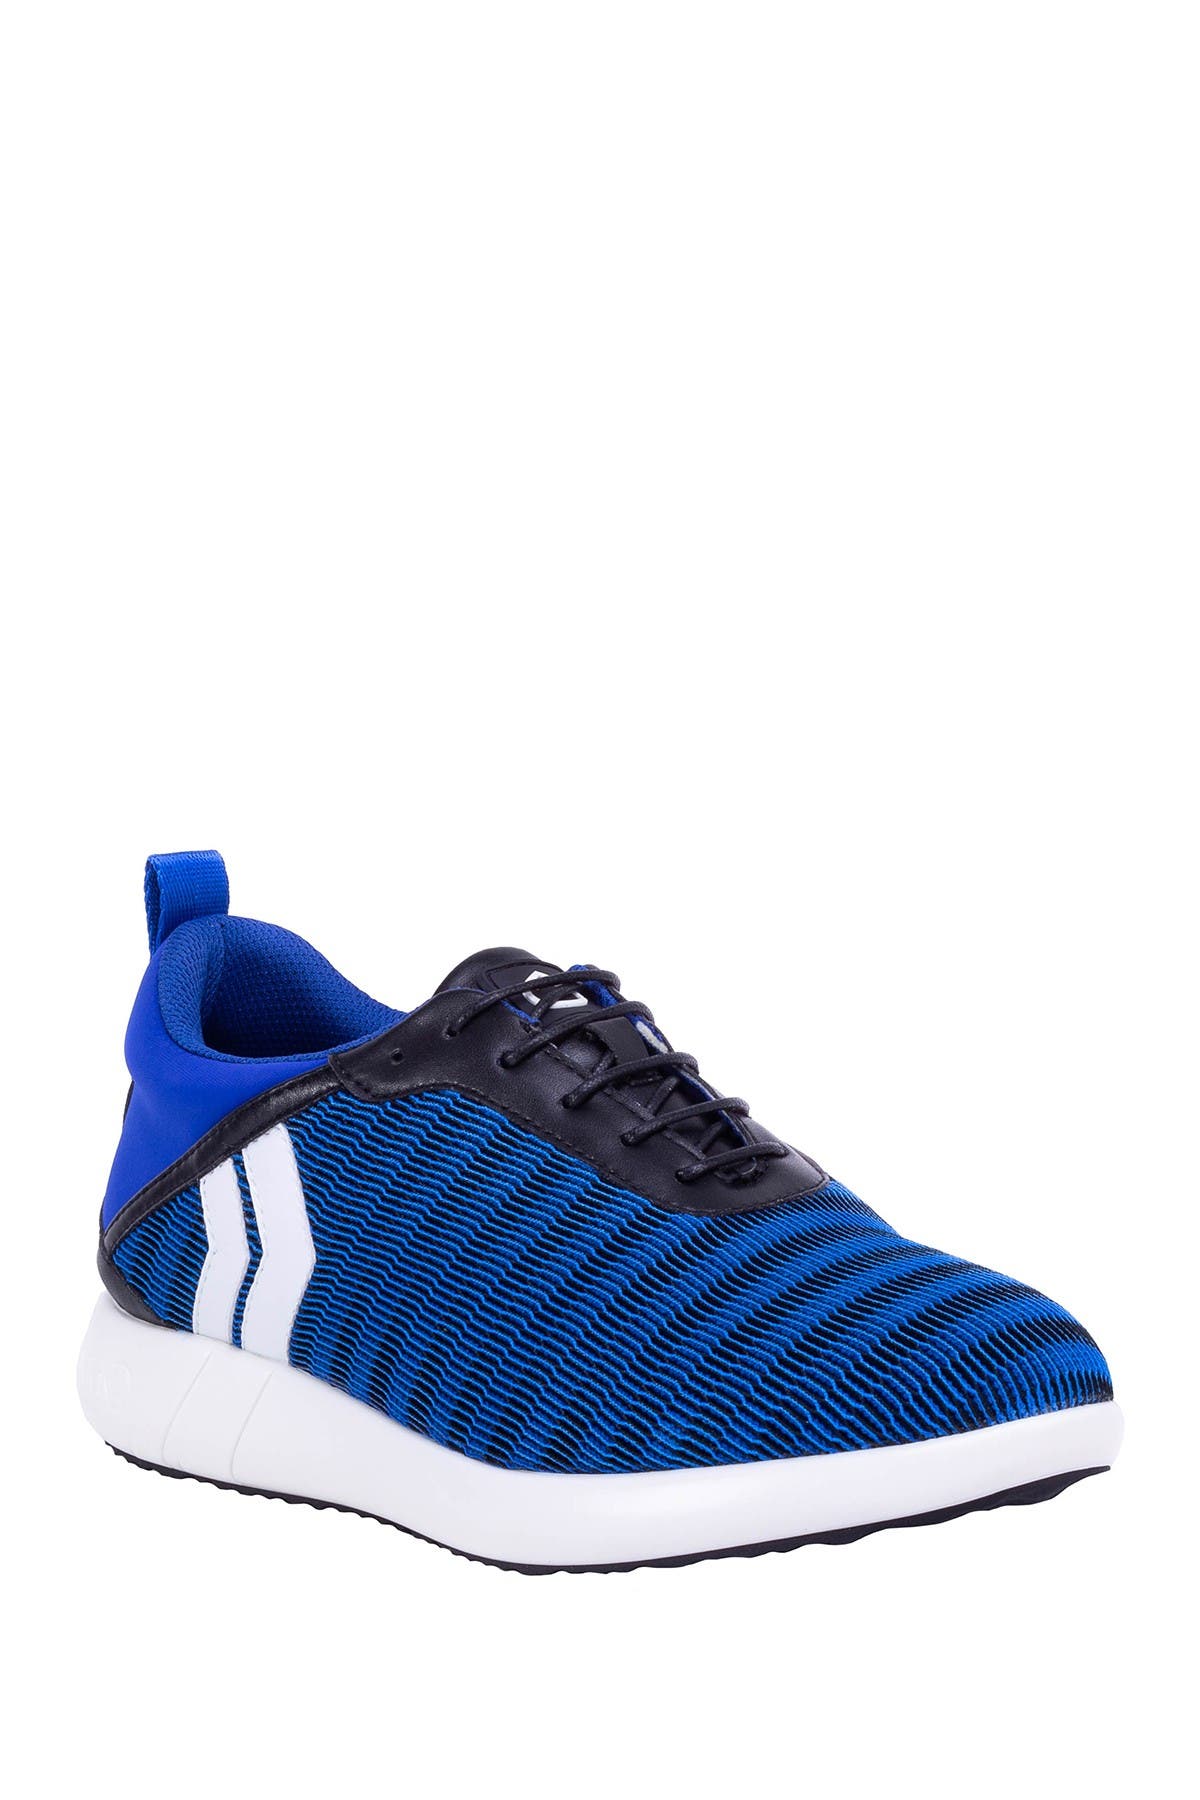 Kicko Wave Sneaker In Blue